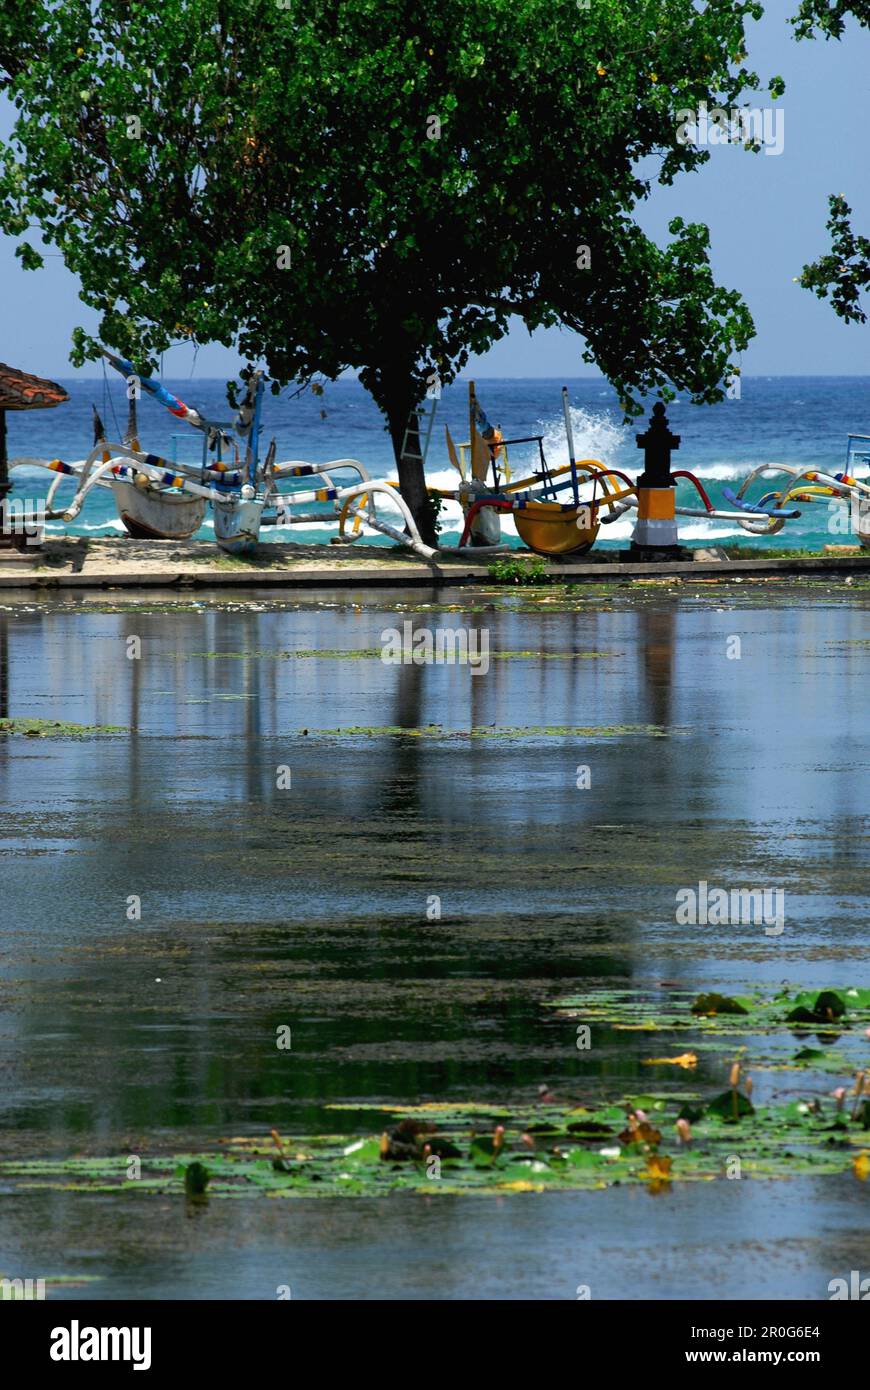 Stagno a Candi Dasa con barche sulla riva, Candi Dasa, Bali, Indonesia, Asia Foto Stock